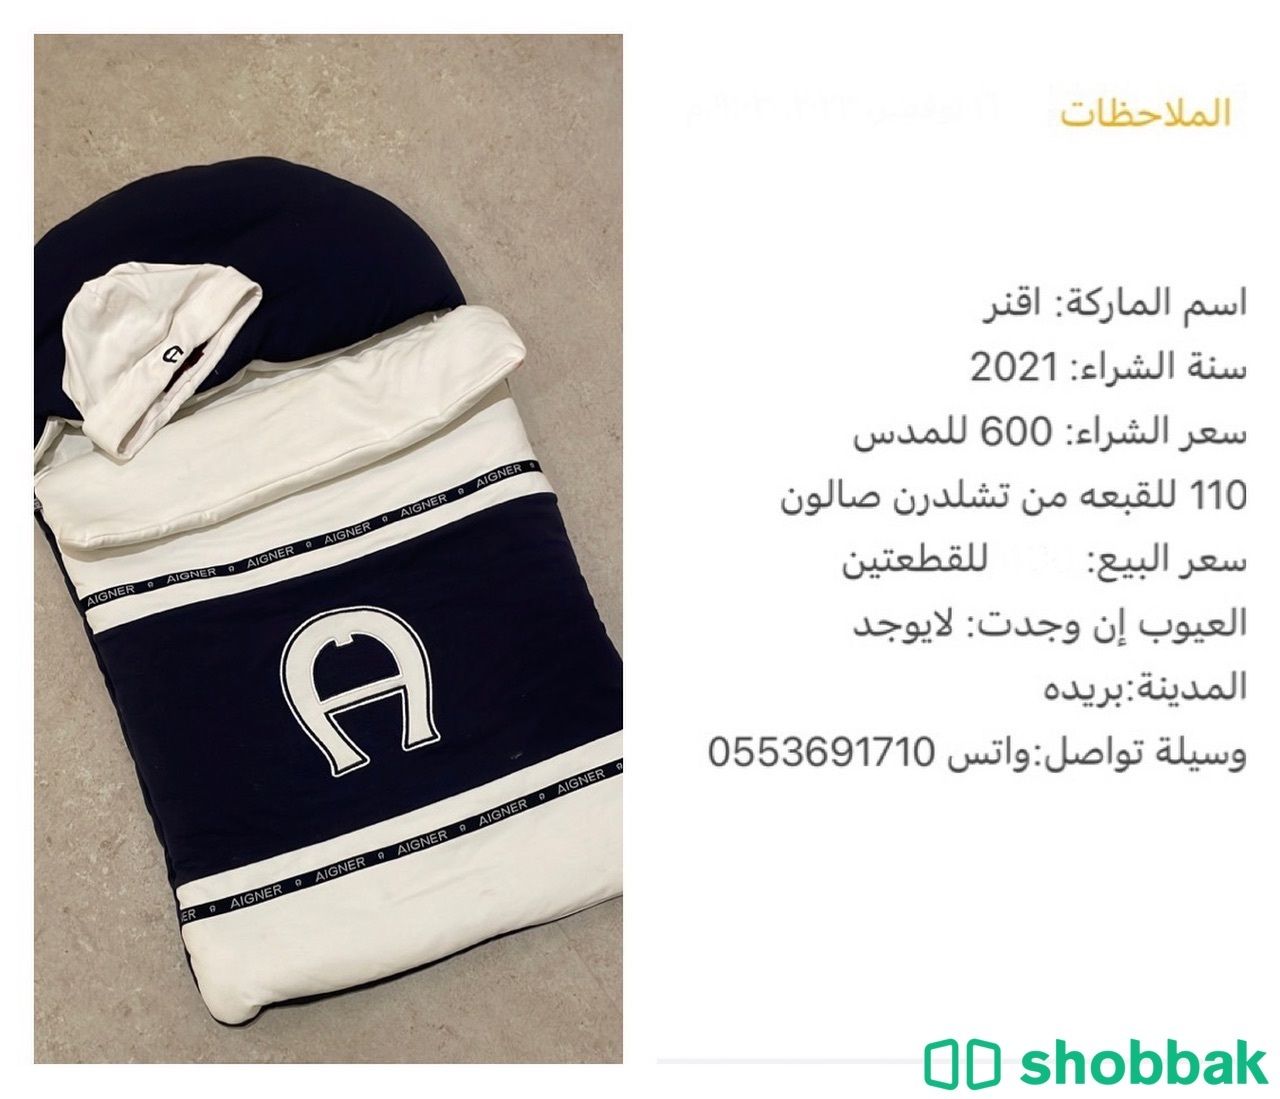 مدس اطفال Shobbak Saudi Arabia